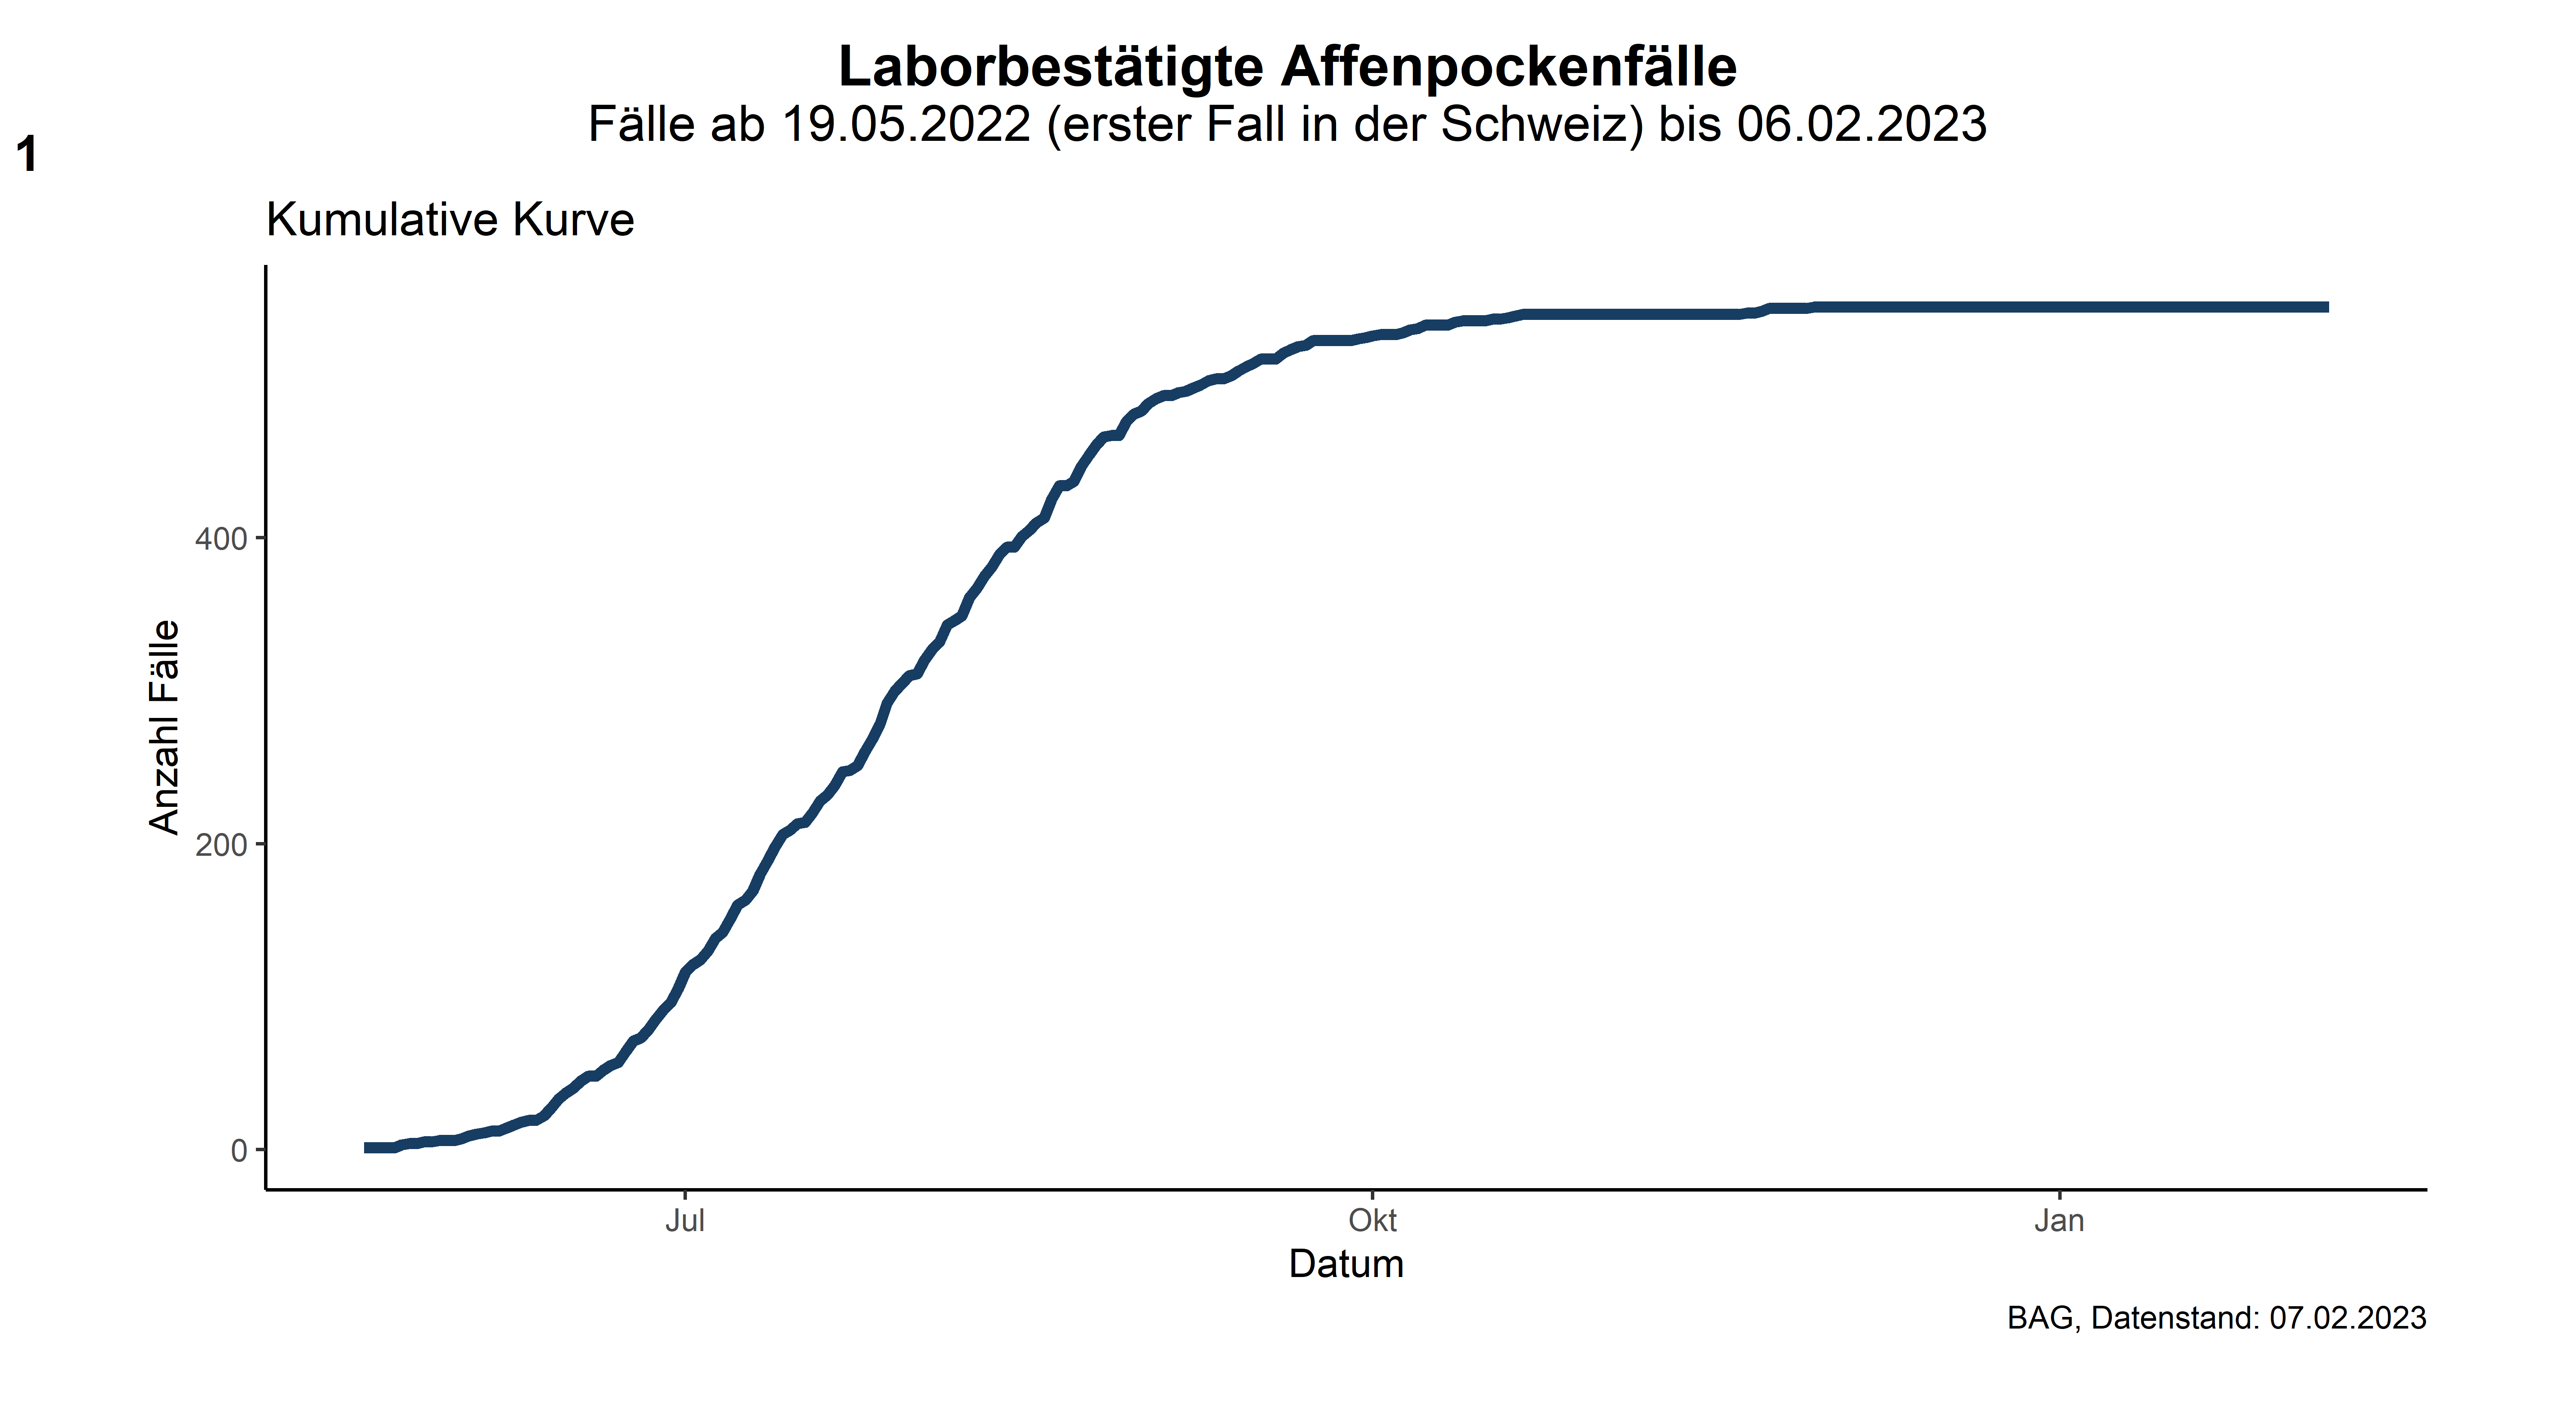 Abbildung 1: Kumulative Kurve der Anzahl laborbestätigten Affenpocken-Fälle (zugehörige Daten in der Excel-Tabelle)